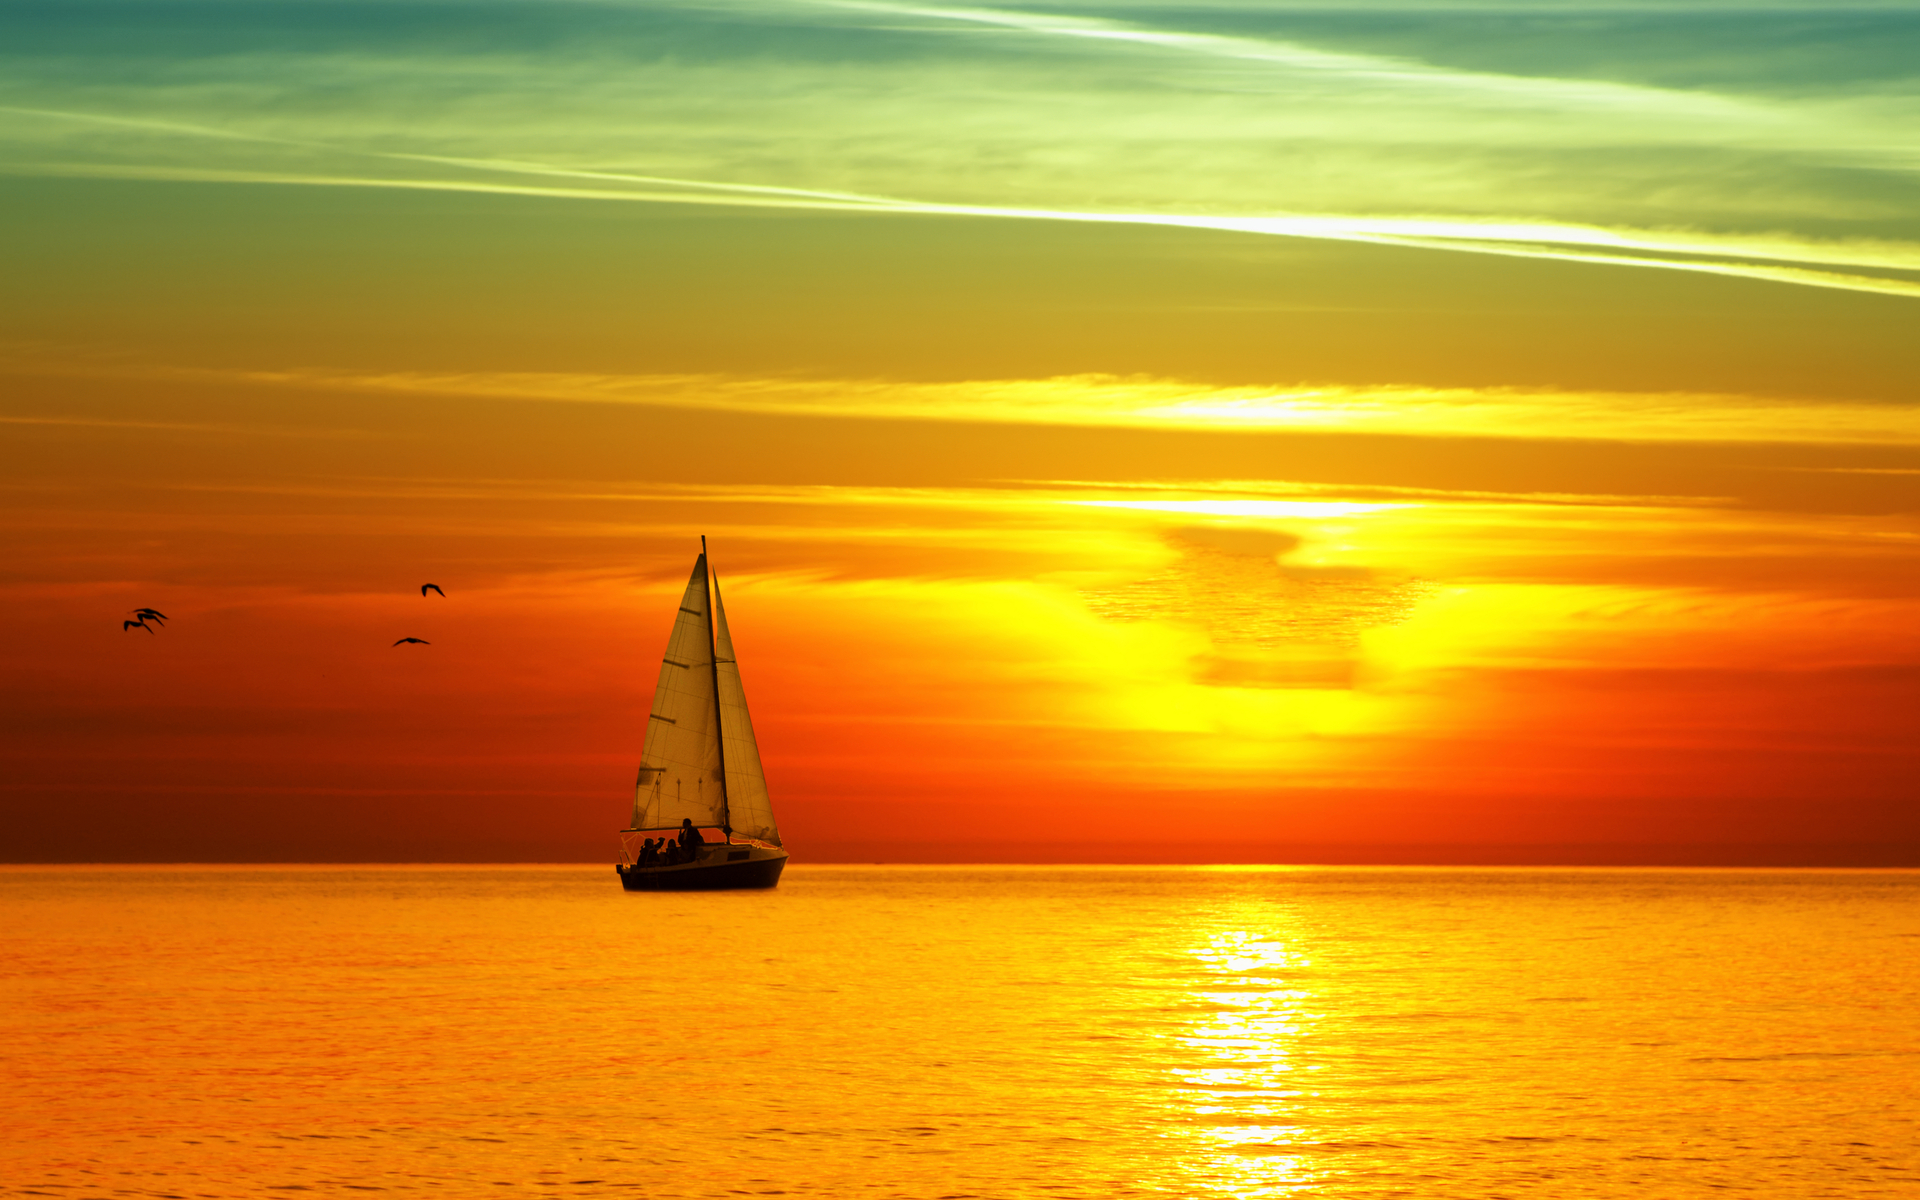 Latest sailboat sunset hd wallpapers new fresh widescreen desktop